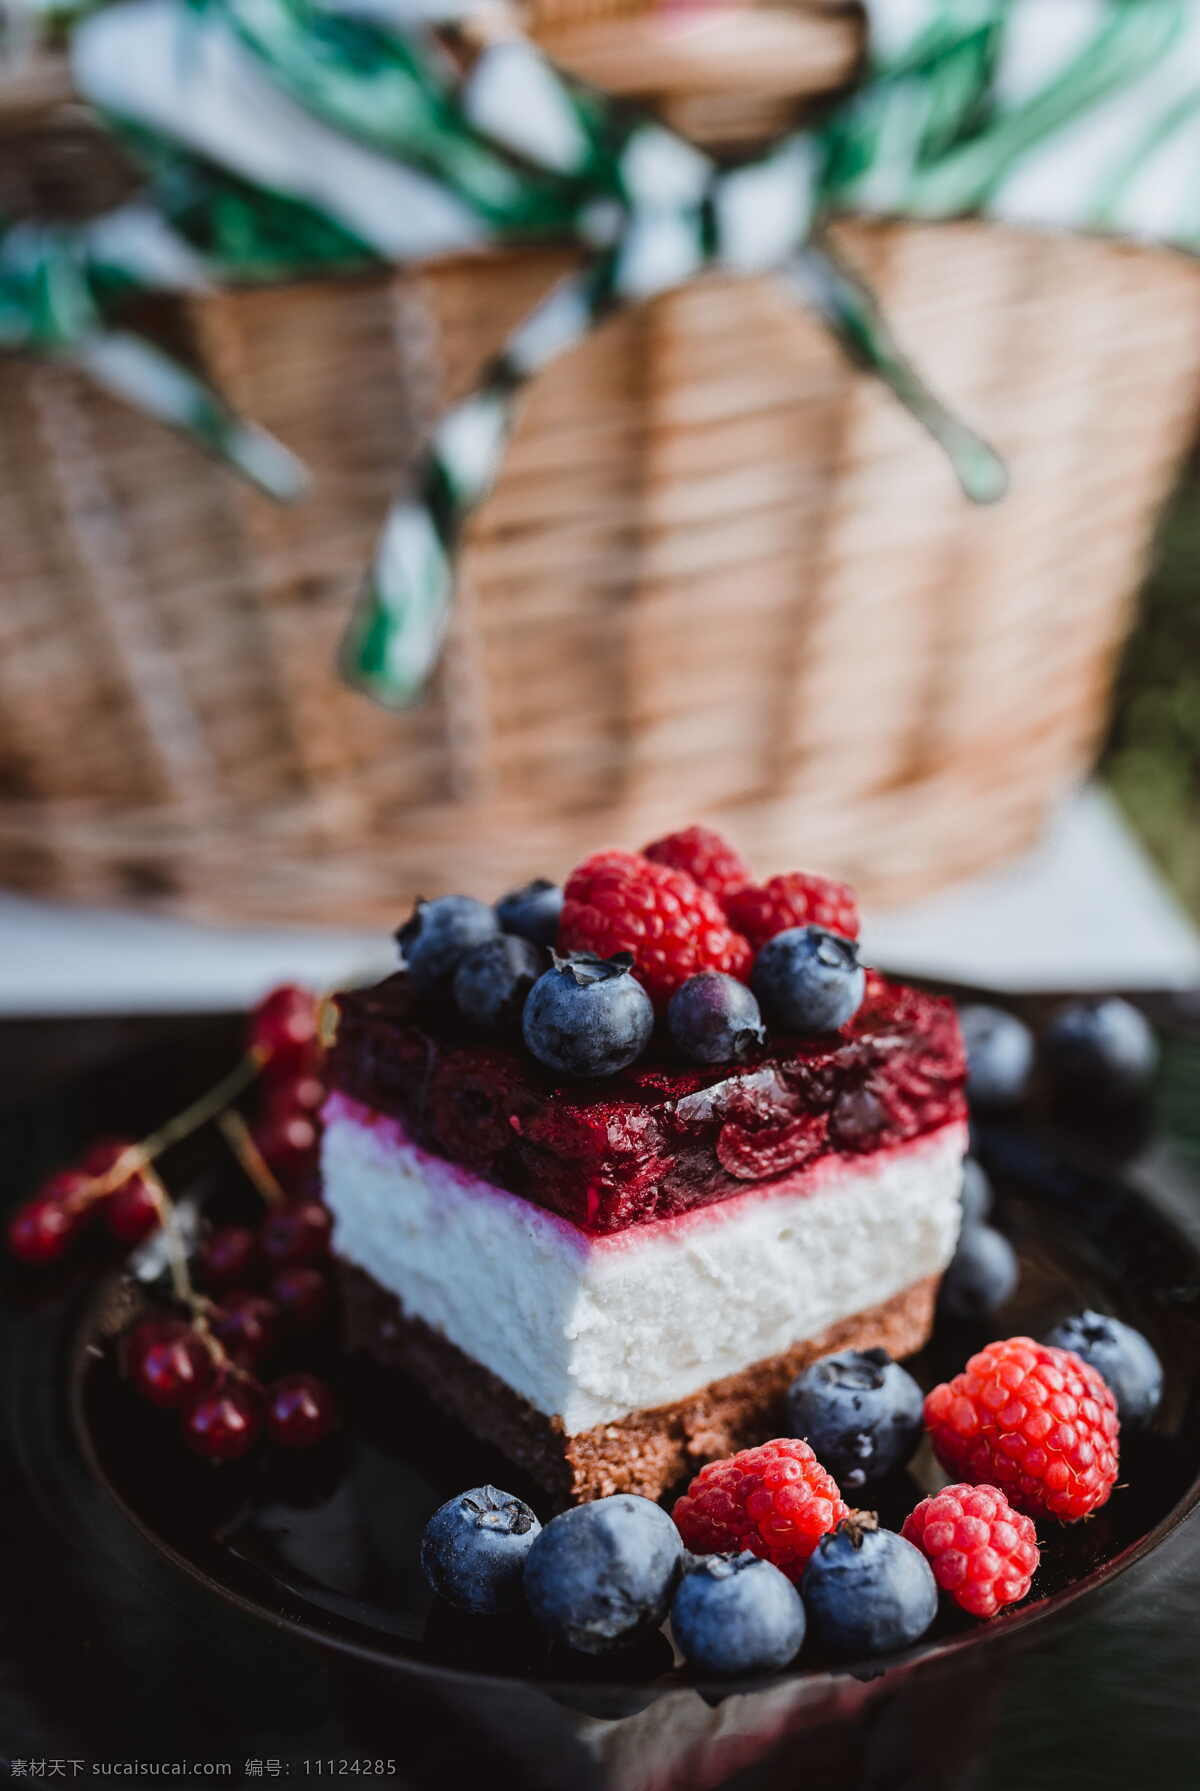 美味 水果 蛋糕 水果蛋糕 奶油蛋糕 糕点 点心 美食 蛋糕房 蛋糕屋 草莓蛋糕 蓝莓蛋糕 慕斯蛋糕 美食图片 美食杂志 蛋糕图片 蛋糕美图 餐饮美食 西餐美食